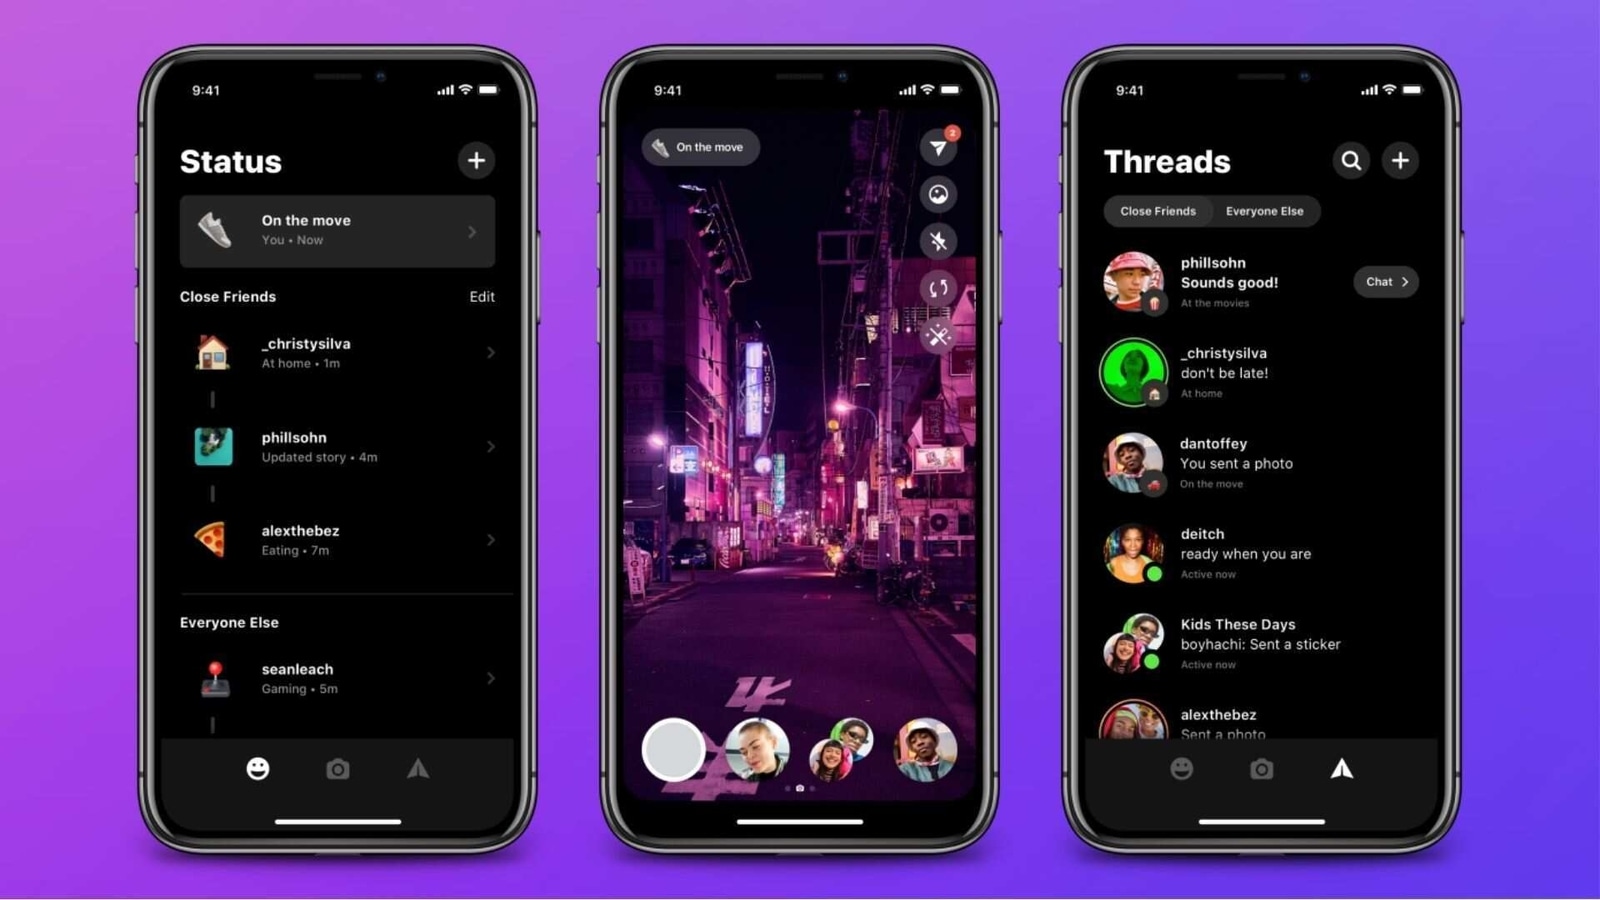 Instagram Threads messaging app gets a new UI | HT Tech